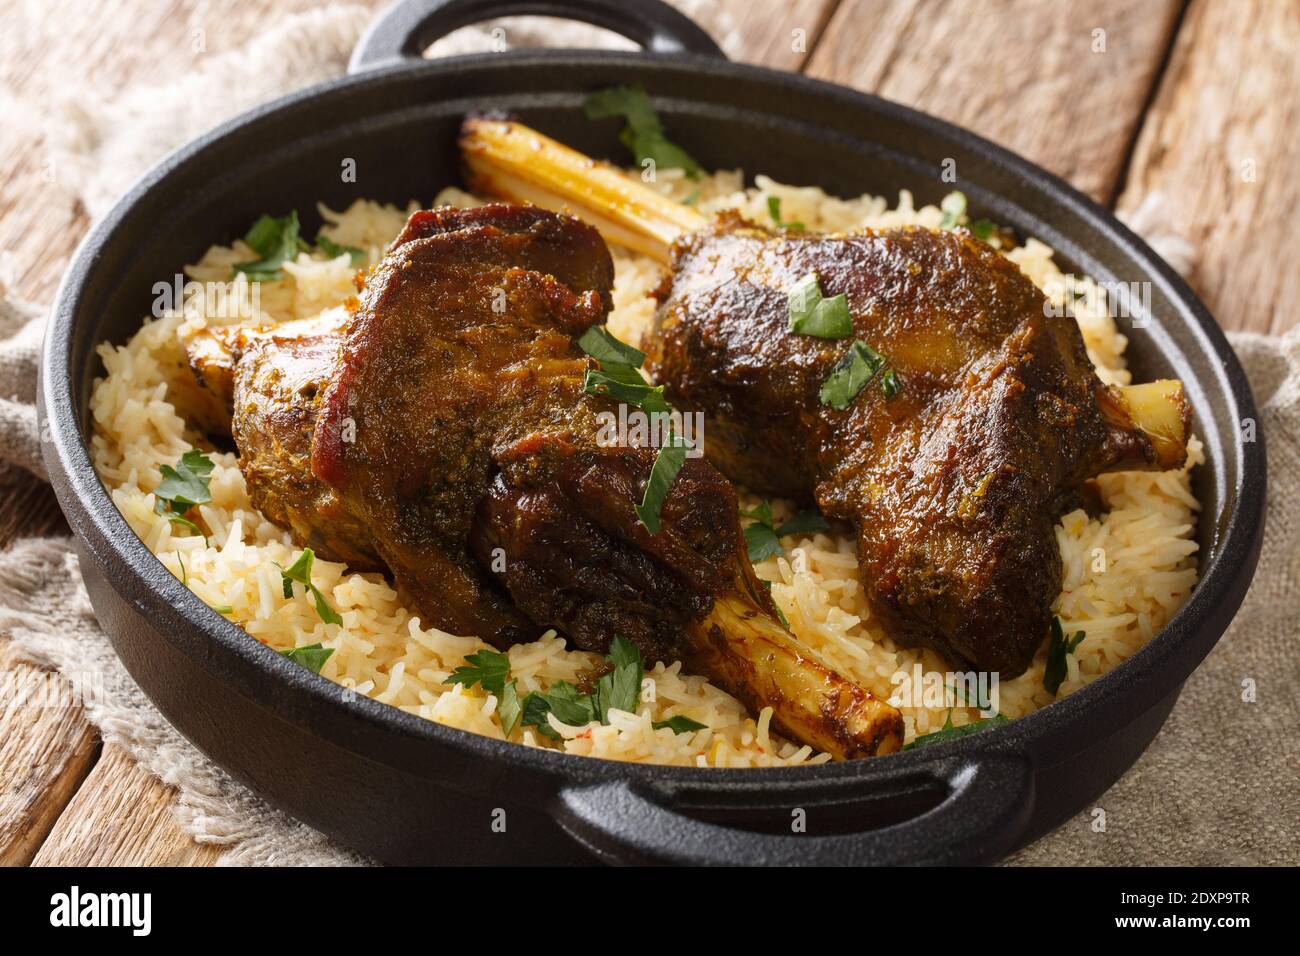 Beliebte jemenitischen gebackenen Lammschenkel serviert mit Basmati-Reis close-up in einer Pfanne auf dem Tisch. Horizontal Stockfoto